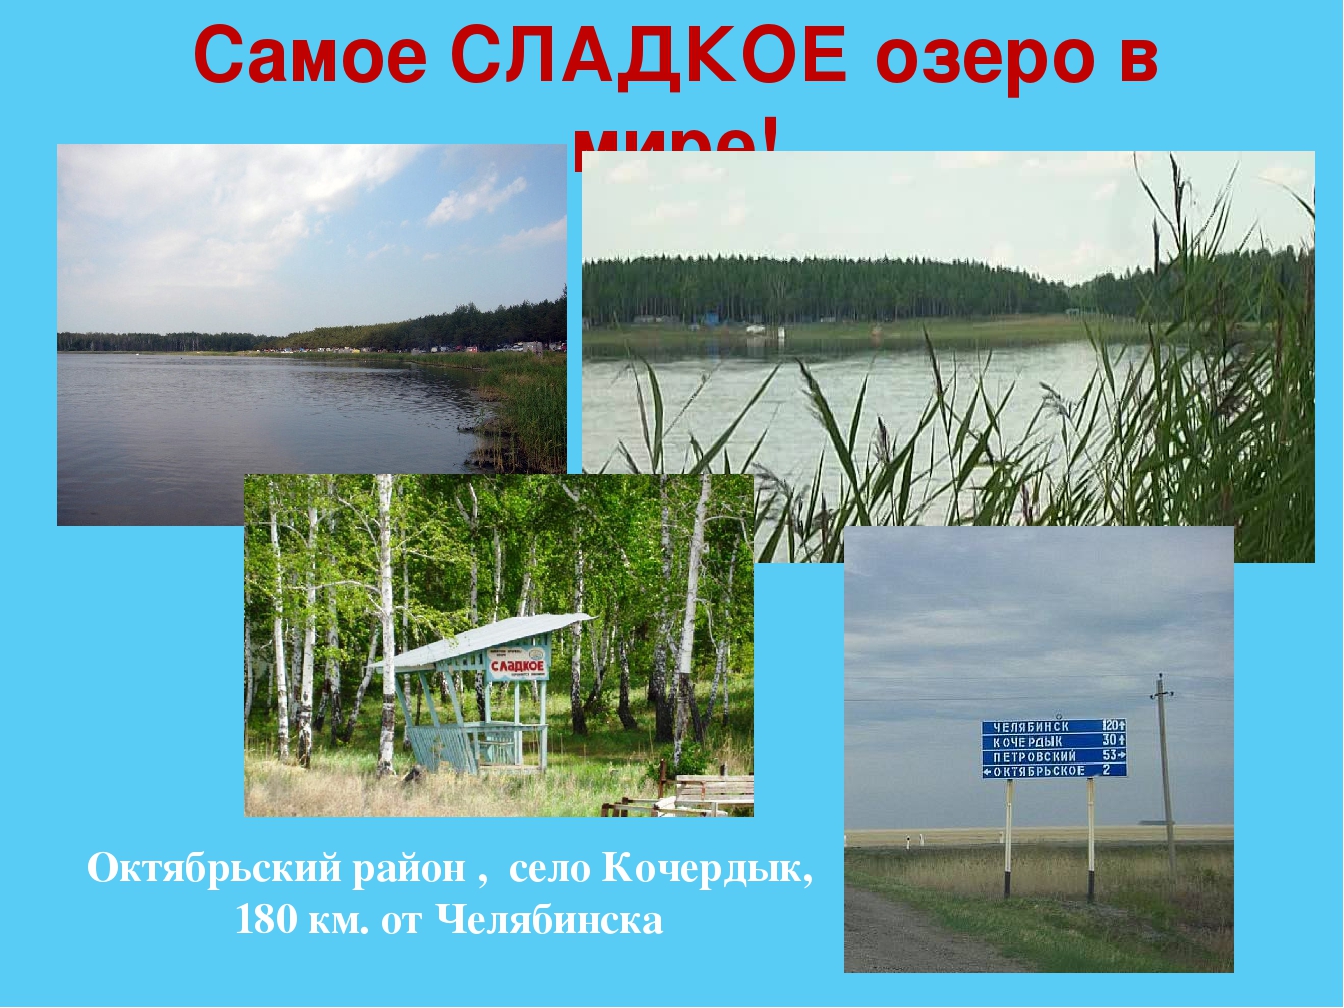 Кочердык Октябрьского района озеро сладкое